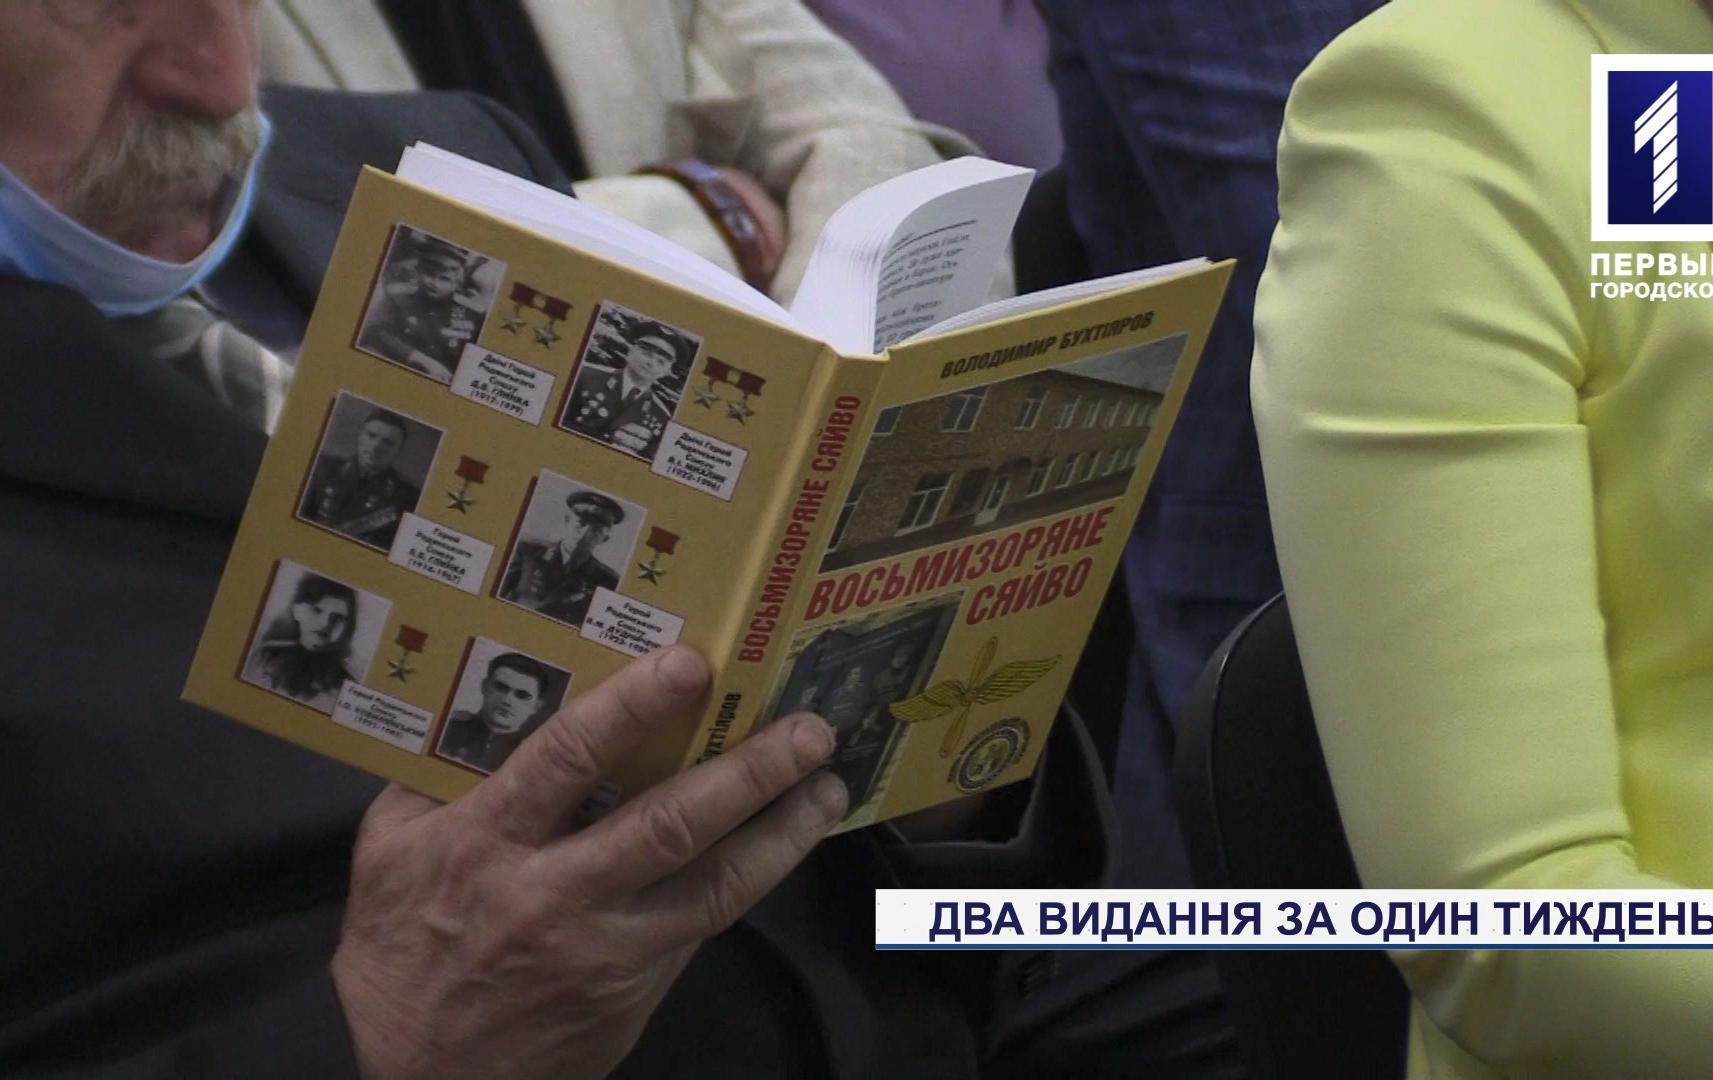 Володимир Бухтіяров видав дві книжки про героїв Другої світової війни